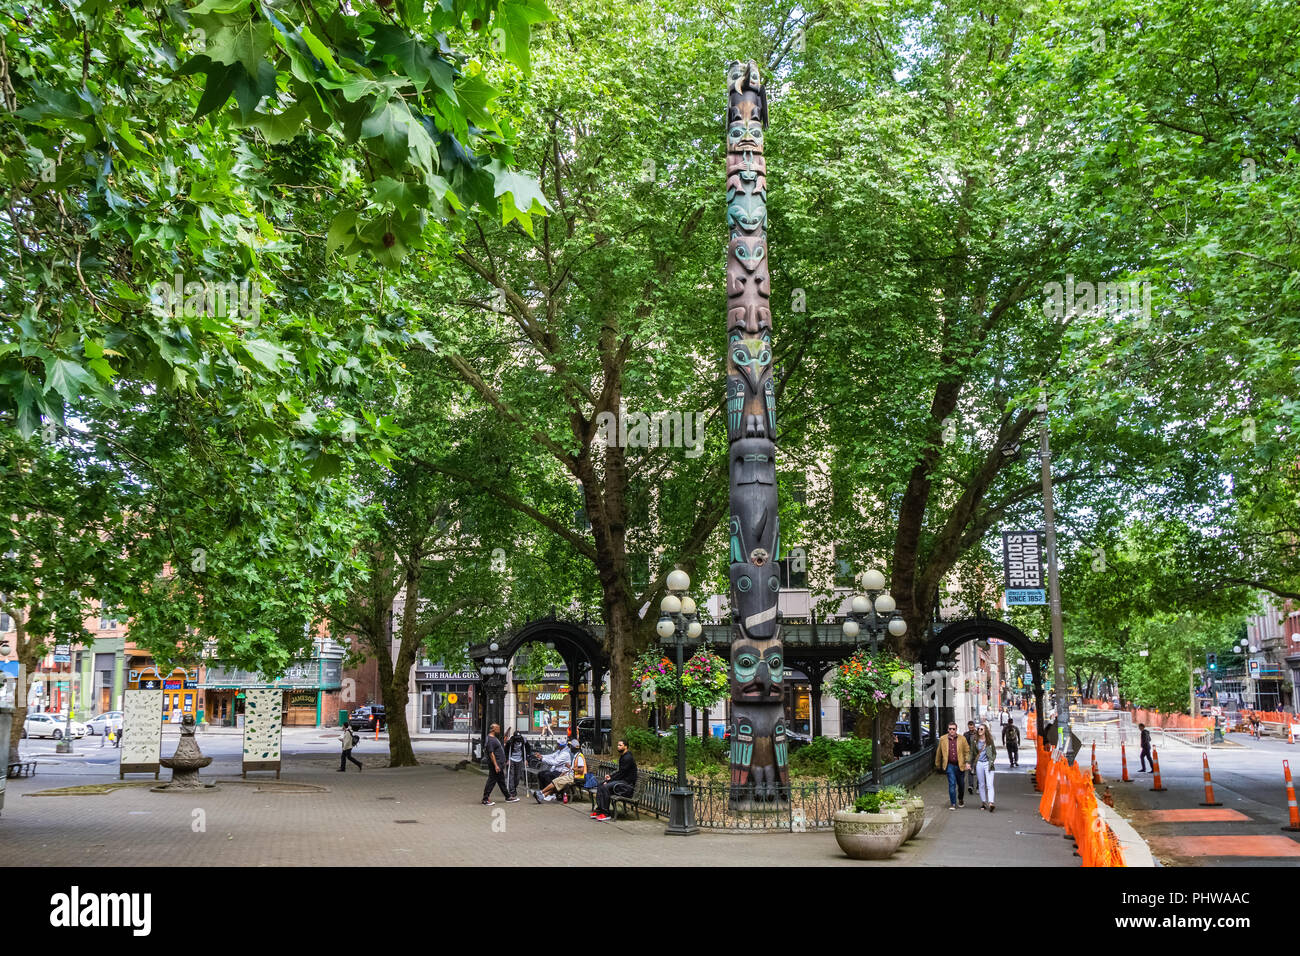 Pioneer Square Park, célèbre plaza triangulaire du quartier historique de Seattle avec un totem en bois Tlingits, Seattle, État de Washington. Banque D'Images